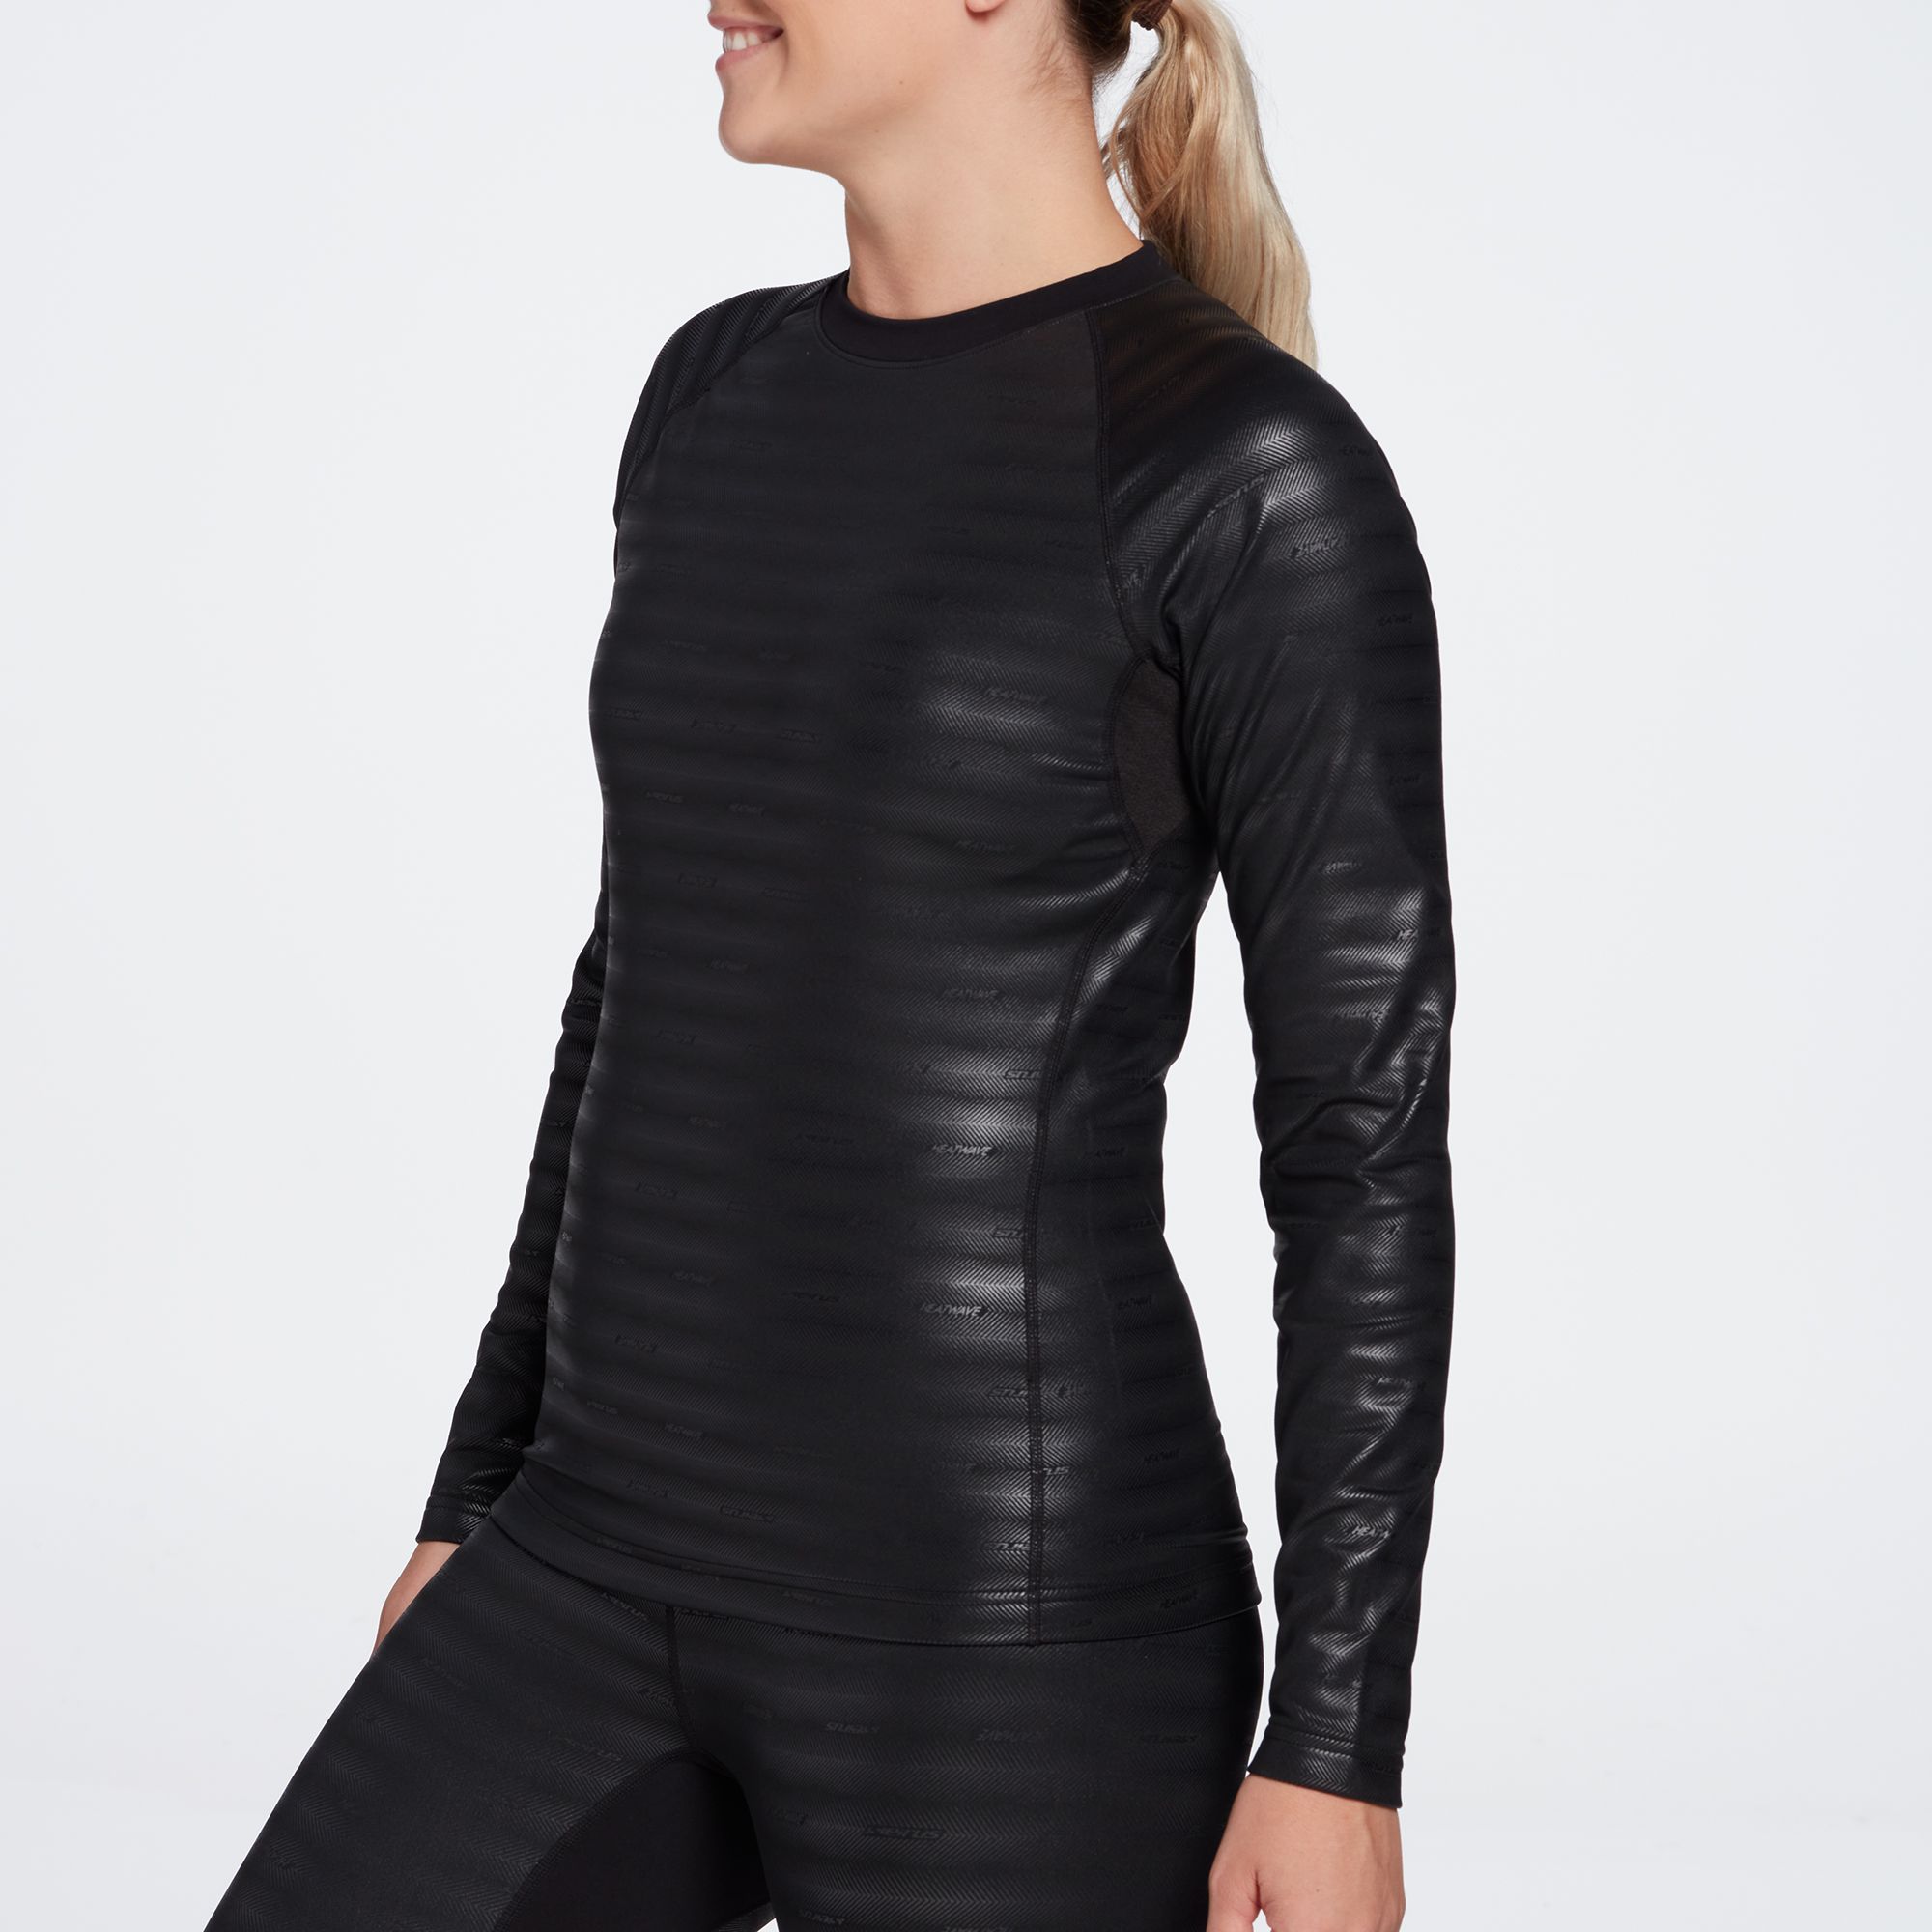 Seirus Women's Heatwave Reversible Long Sleeve Shirt